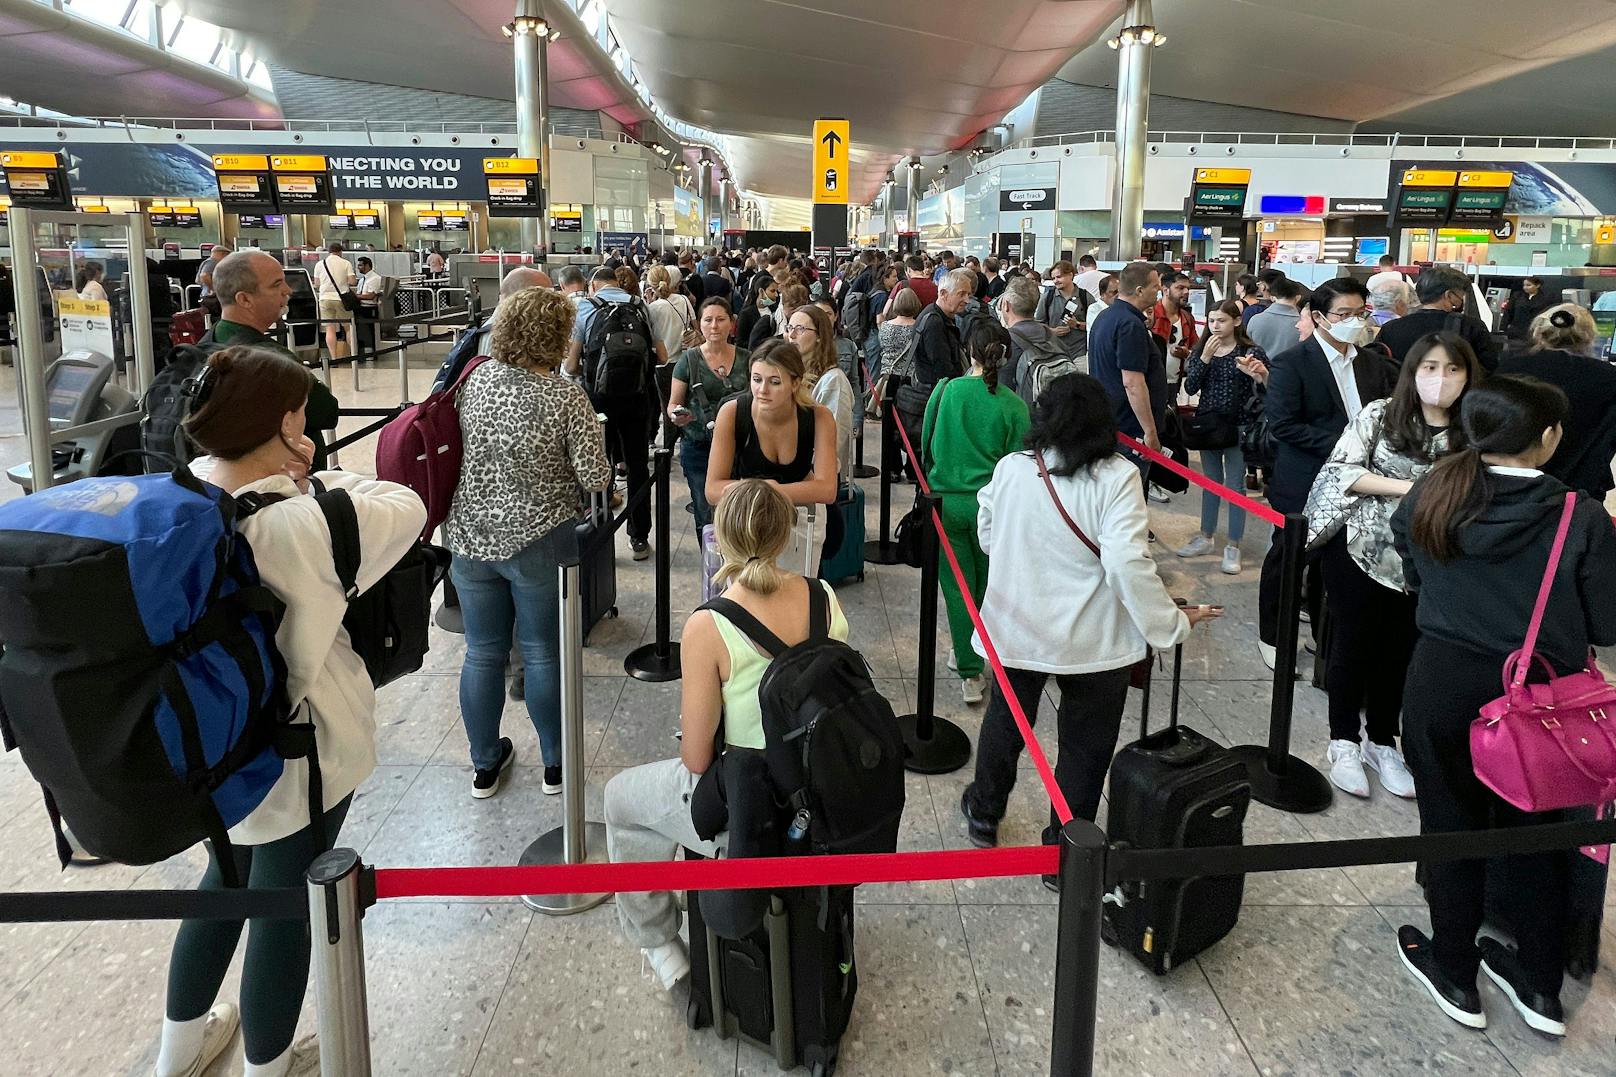 Die Menschen sind inmitten der anhaltenden Personalkrise der Branche mit Reisestörungen und langen Warteschlangen an Flughäfen konfrontiert. Nach zwei Jahren pandemiebedingter Einschränkungen ist die Reisenachfrage mit aller Macht zurück.